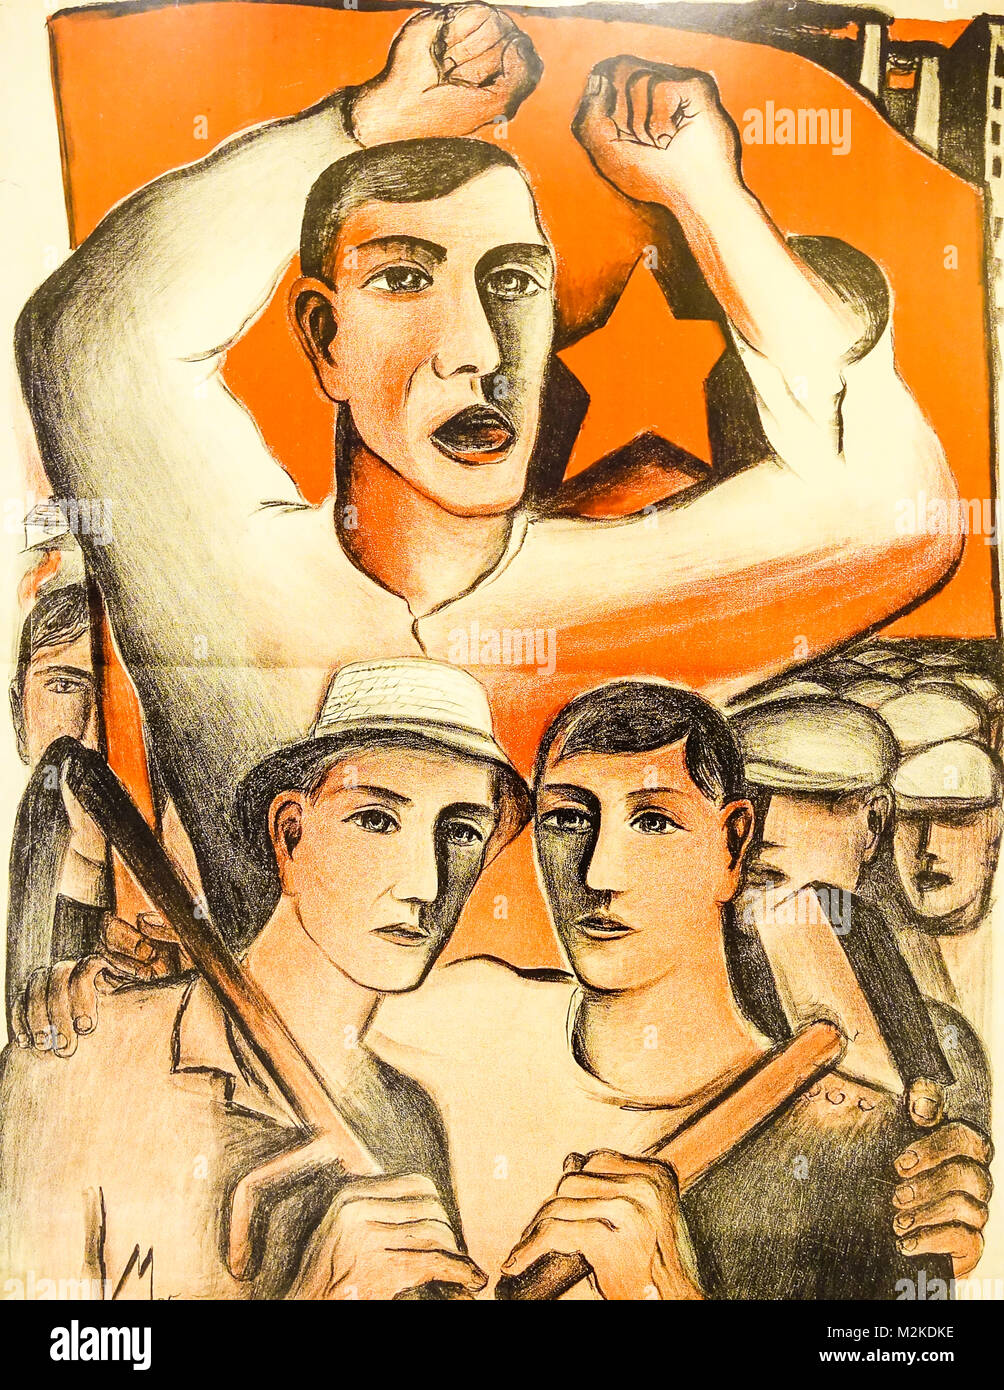 Plakat für die Kommunistische Partei 1925, veletrzni Palac, National Gallery, Prag Holesovice, Tschechische Republik Stockfoto